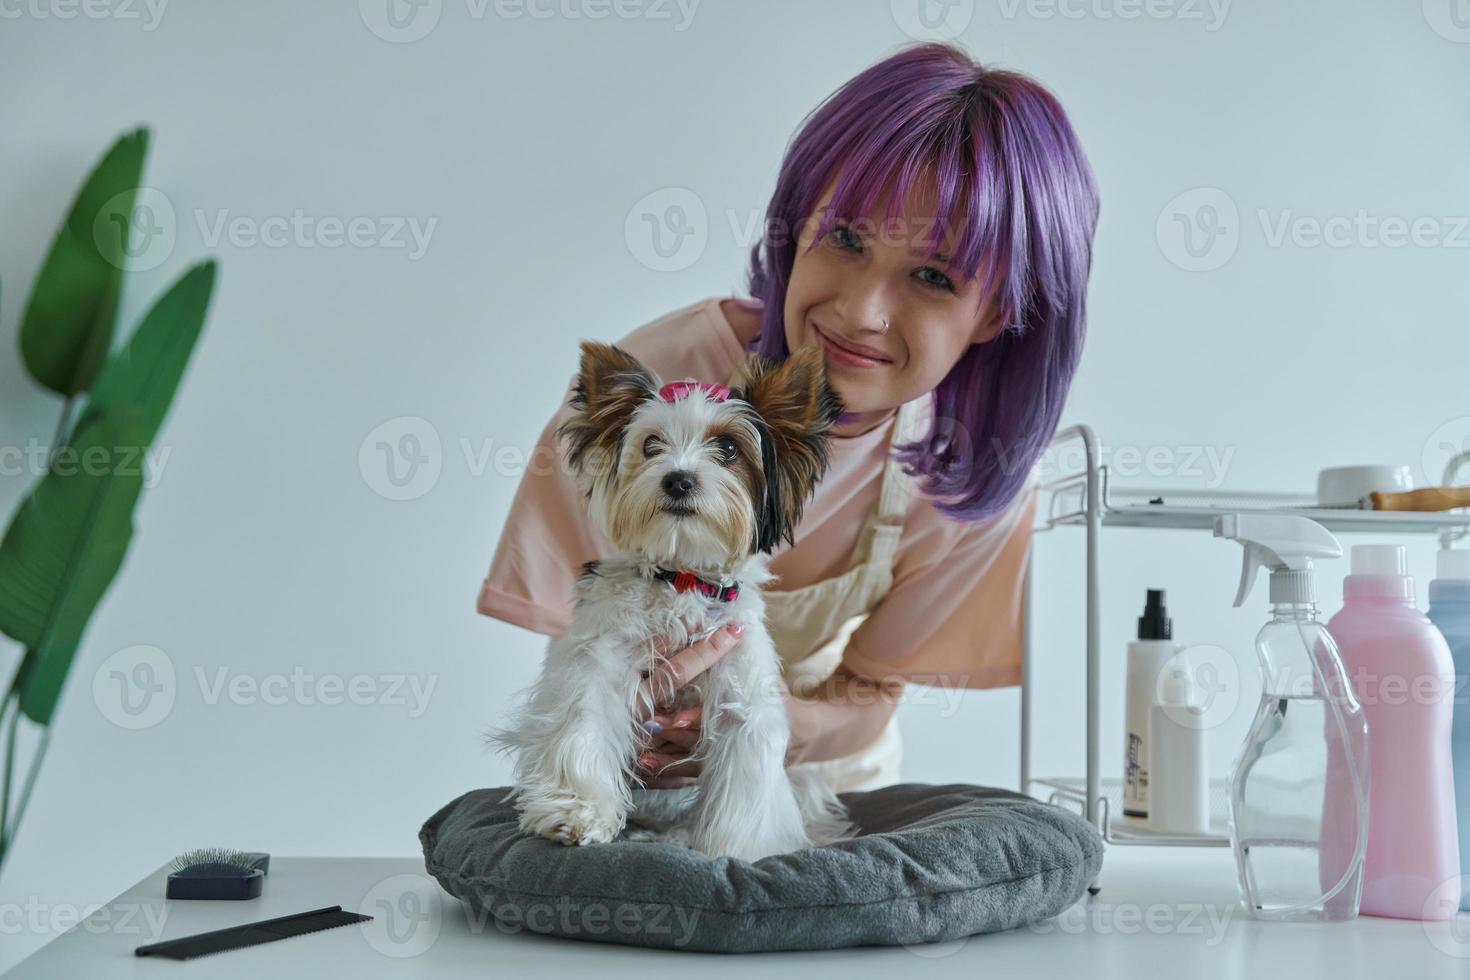 atractiva joven cuidando a un perrito en el salón de belleza foto